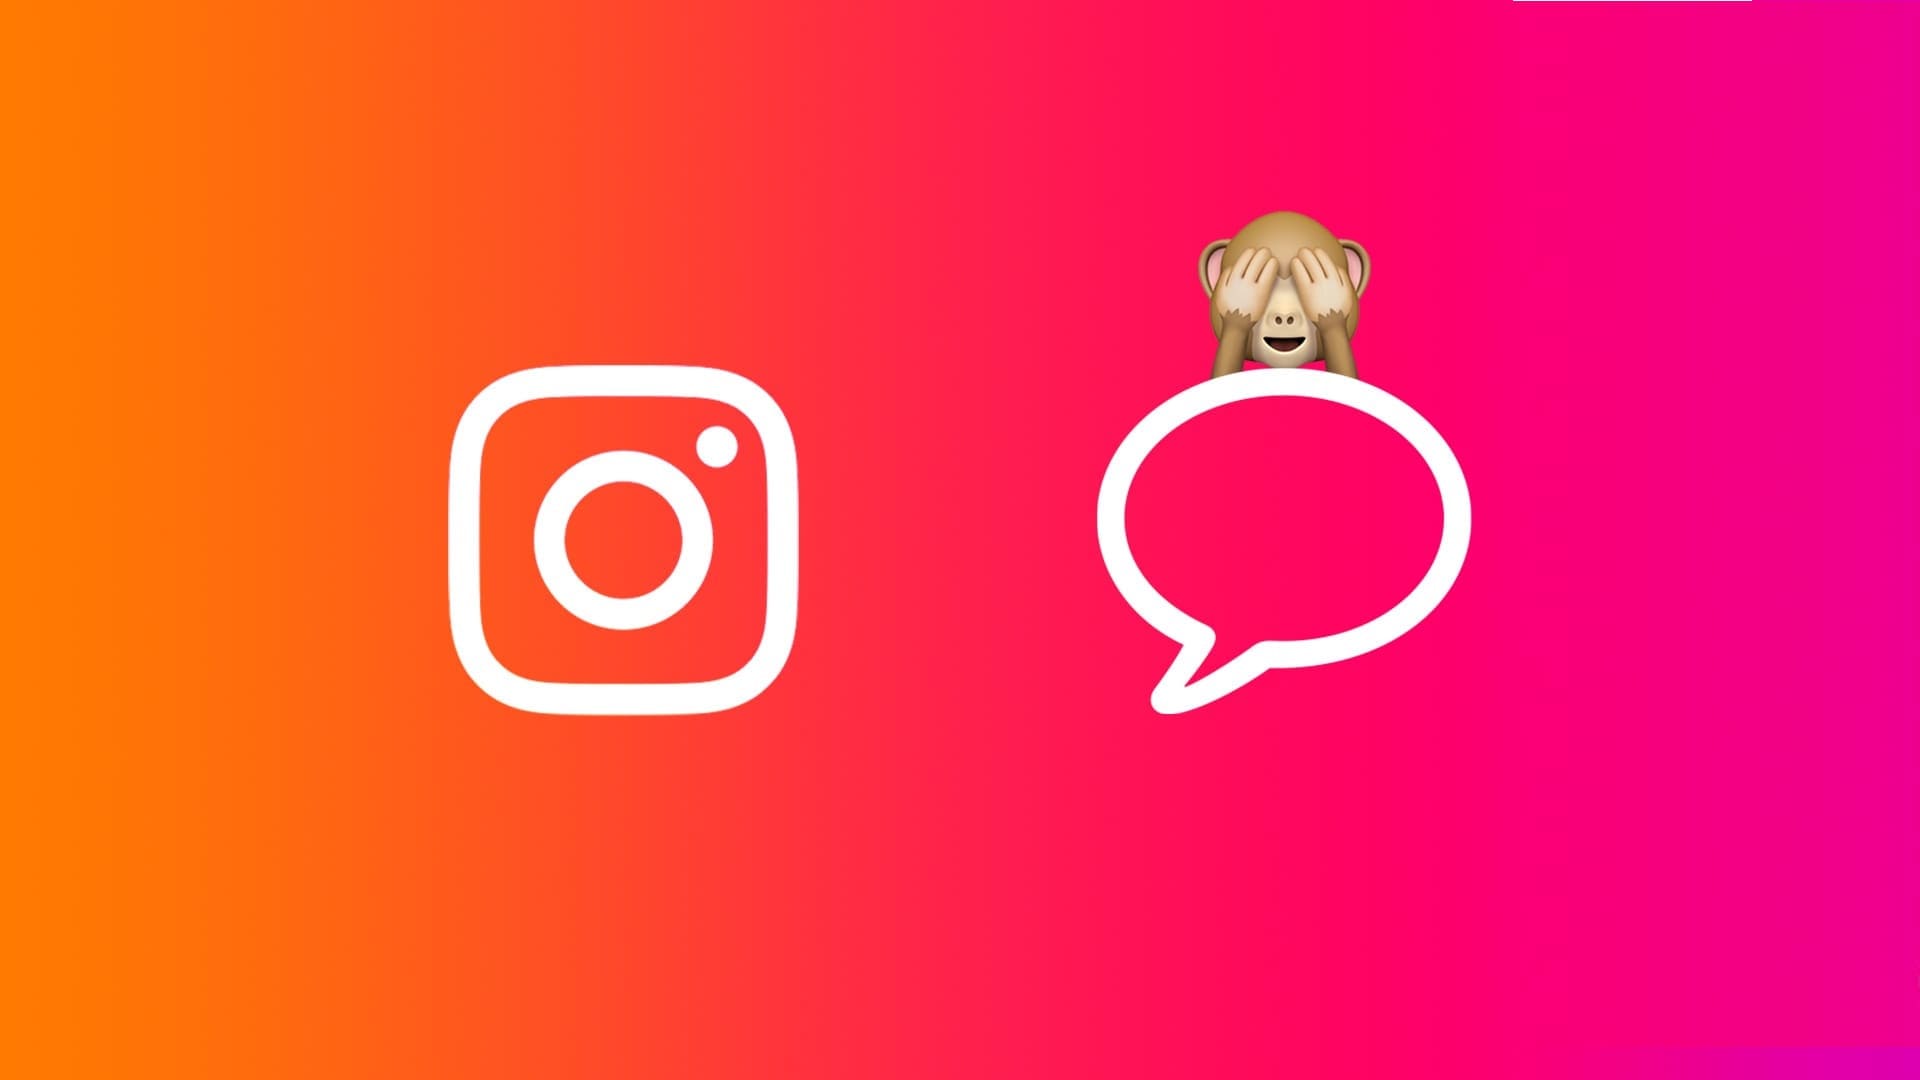 كيفية إلغاء رؤية أو قراءة الرسائل على Instagram - %categories